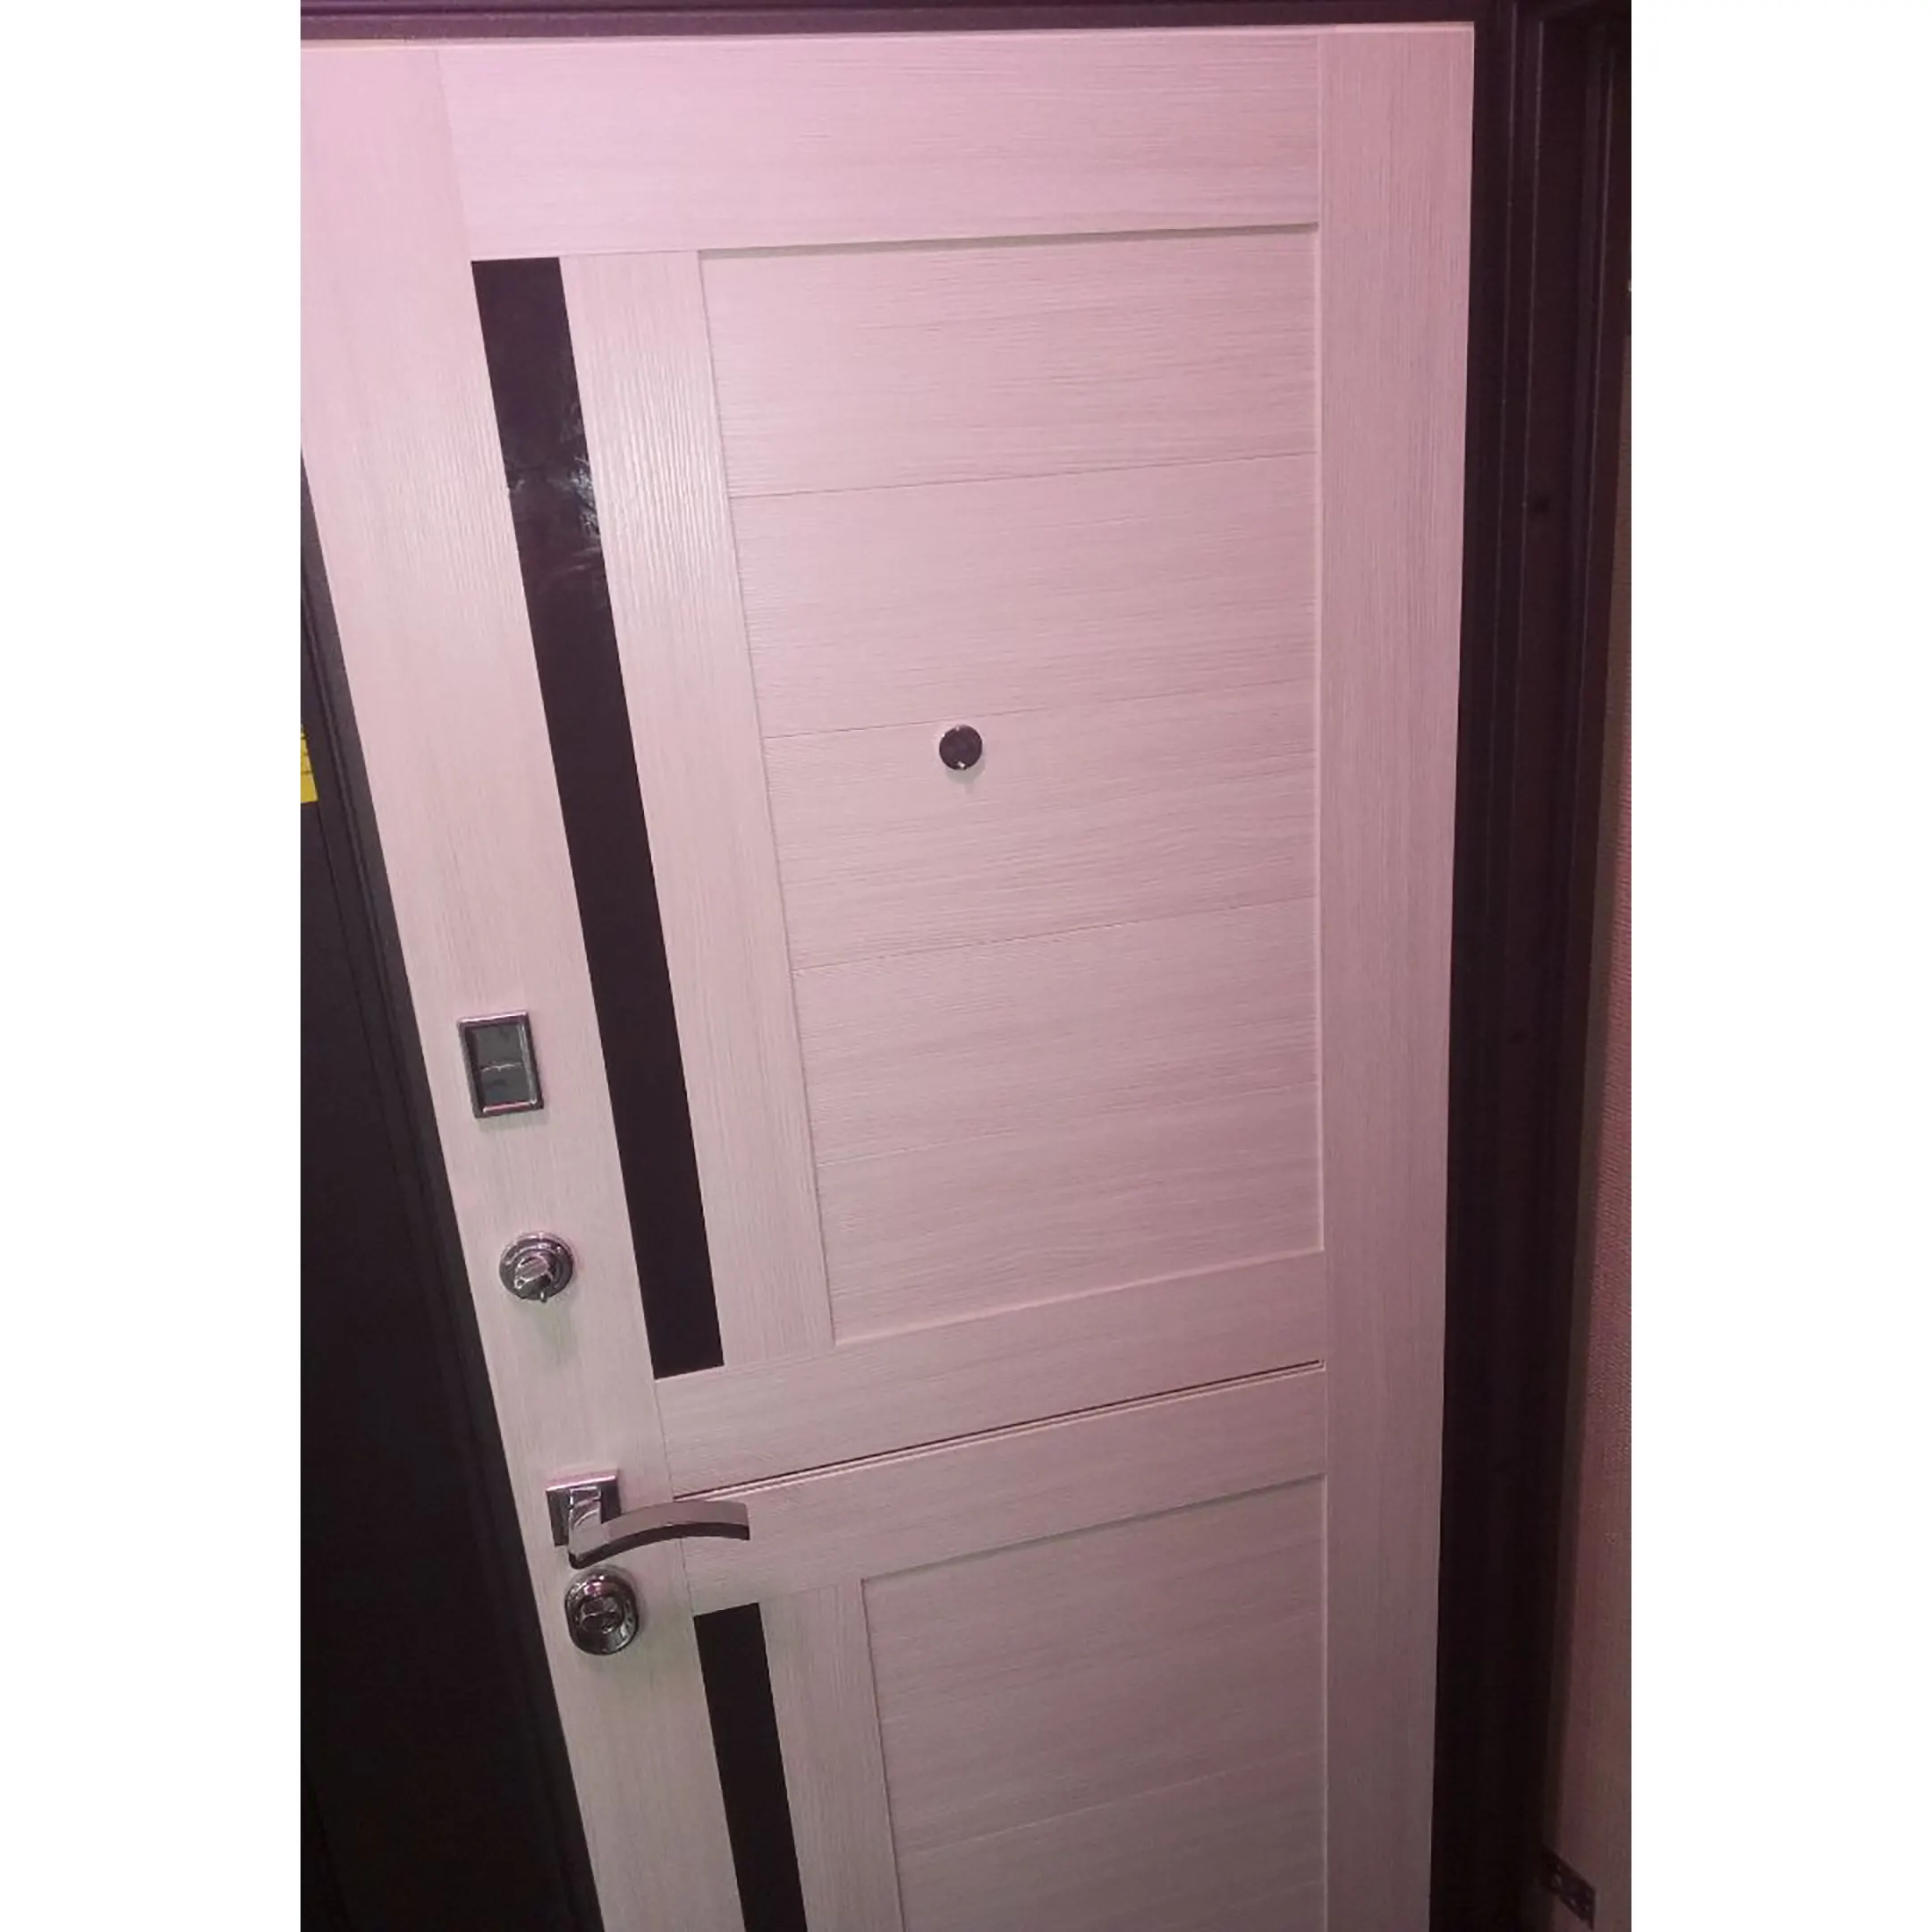 Металлическая дверь СОЛОМОН Элегия 880 левое открывание (уценка Симферополь)